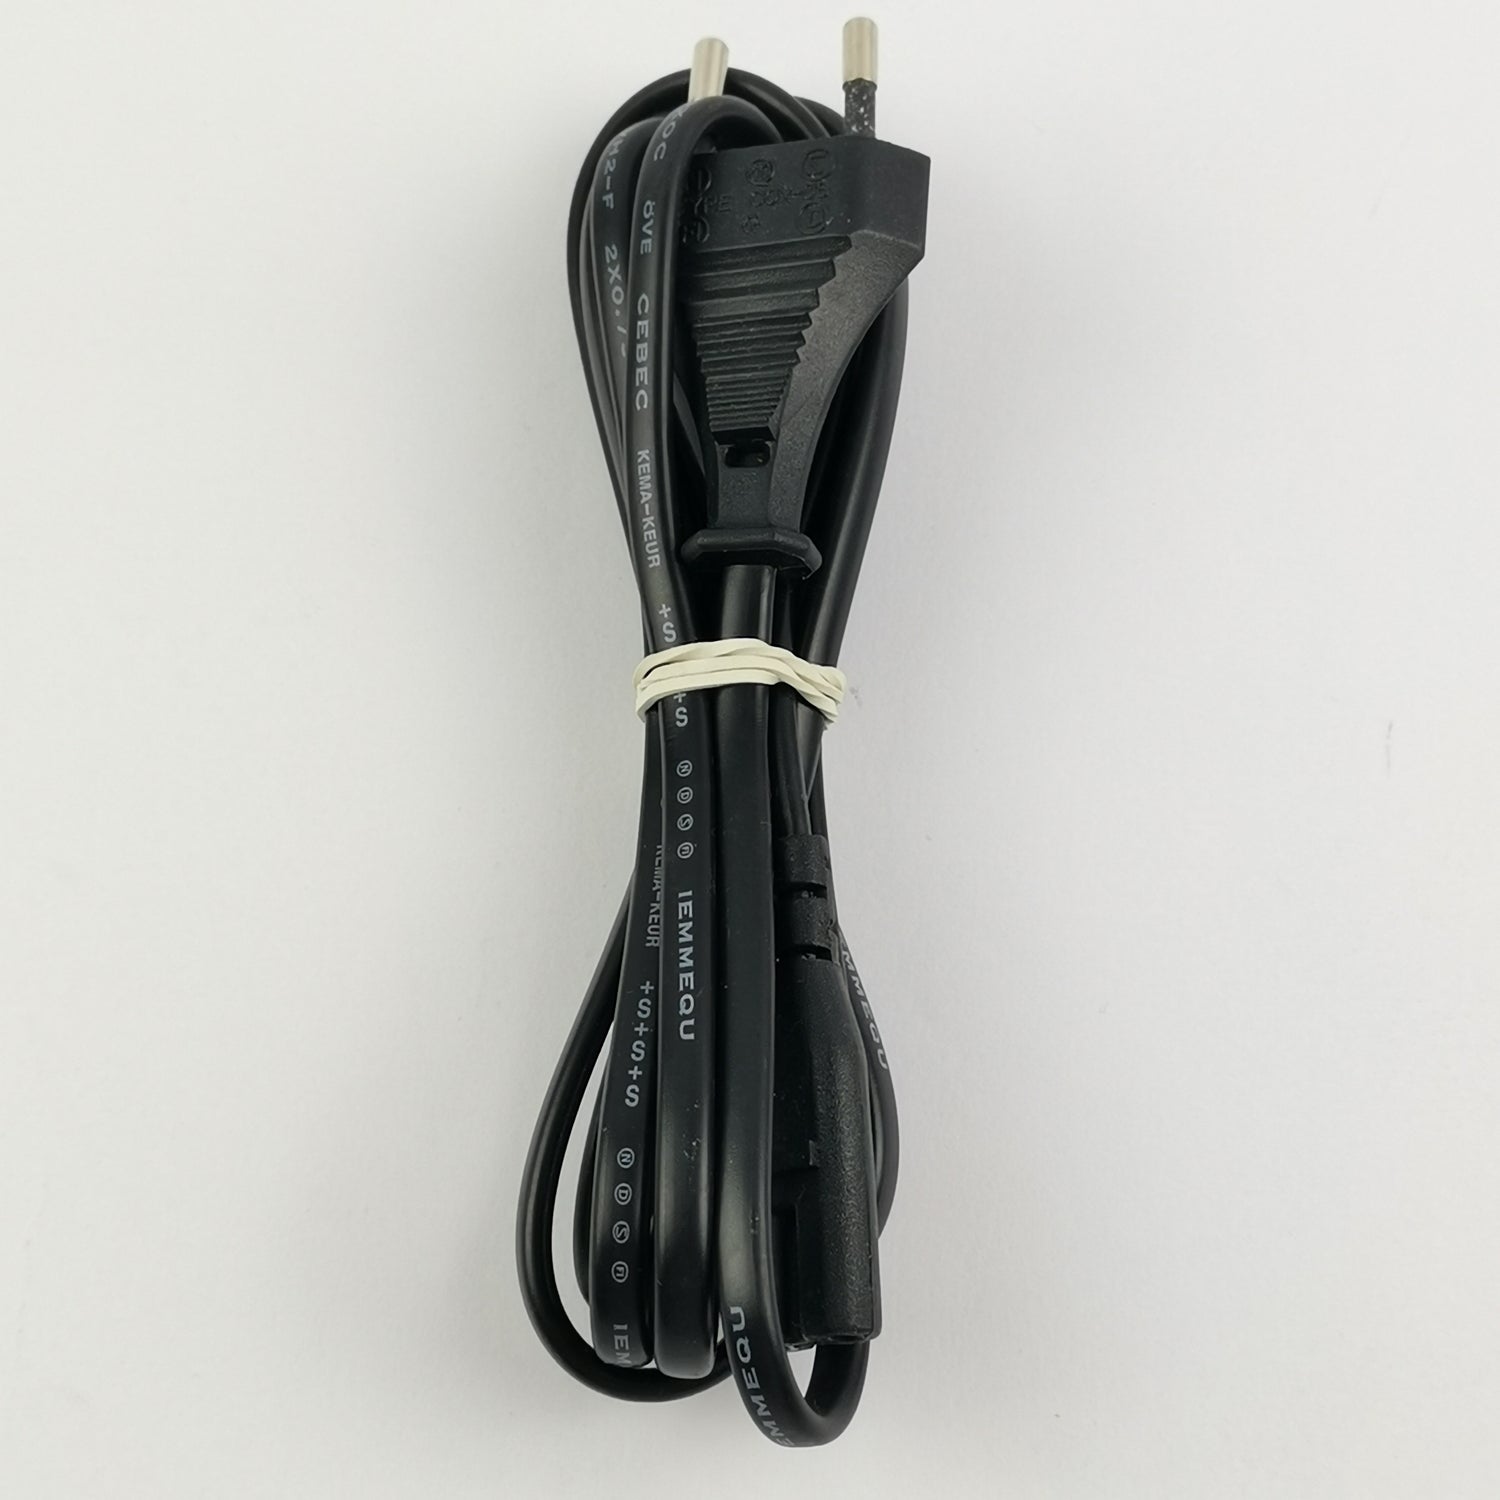 Sony Playstation 1 Zubehör : Original Kabelsatz - AV und Strom Kabel Cable